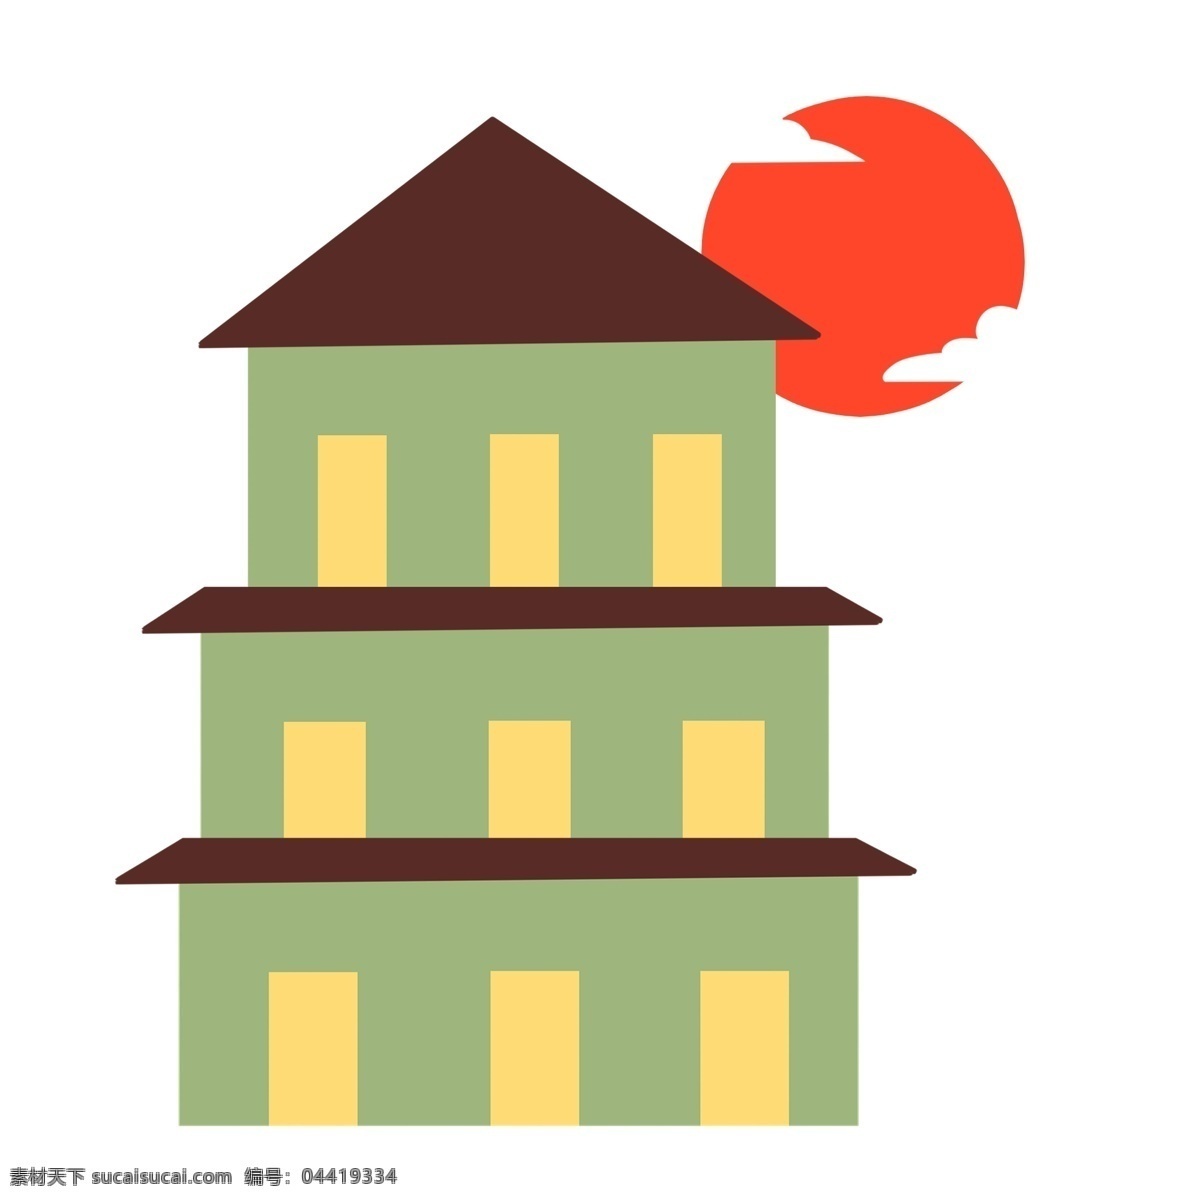 卡通 日本 建筑 插画 日本建筑 绿色的楼房 黄色门窗 红色的太阳 白色云朵 卡通建筑插画 日式建筑